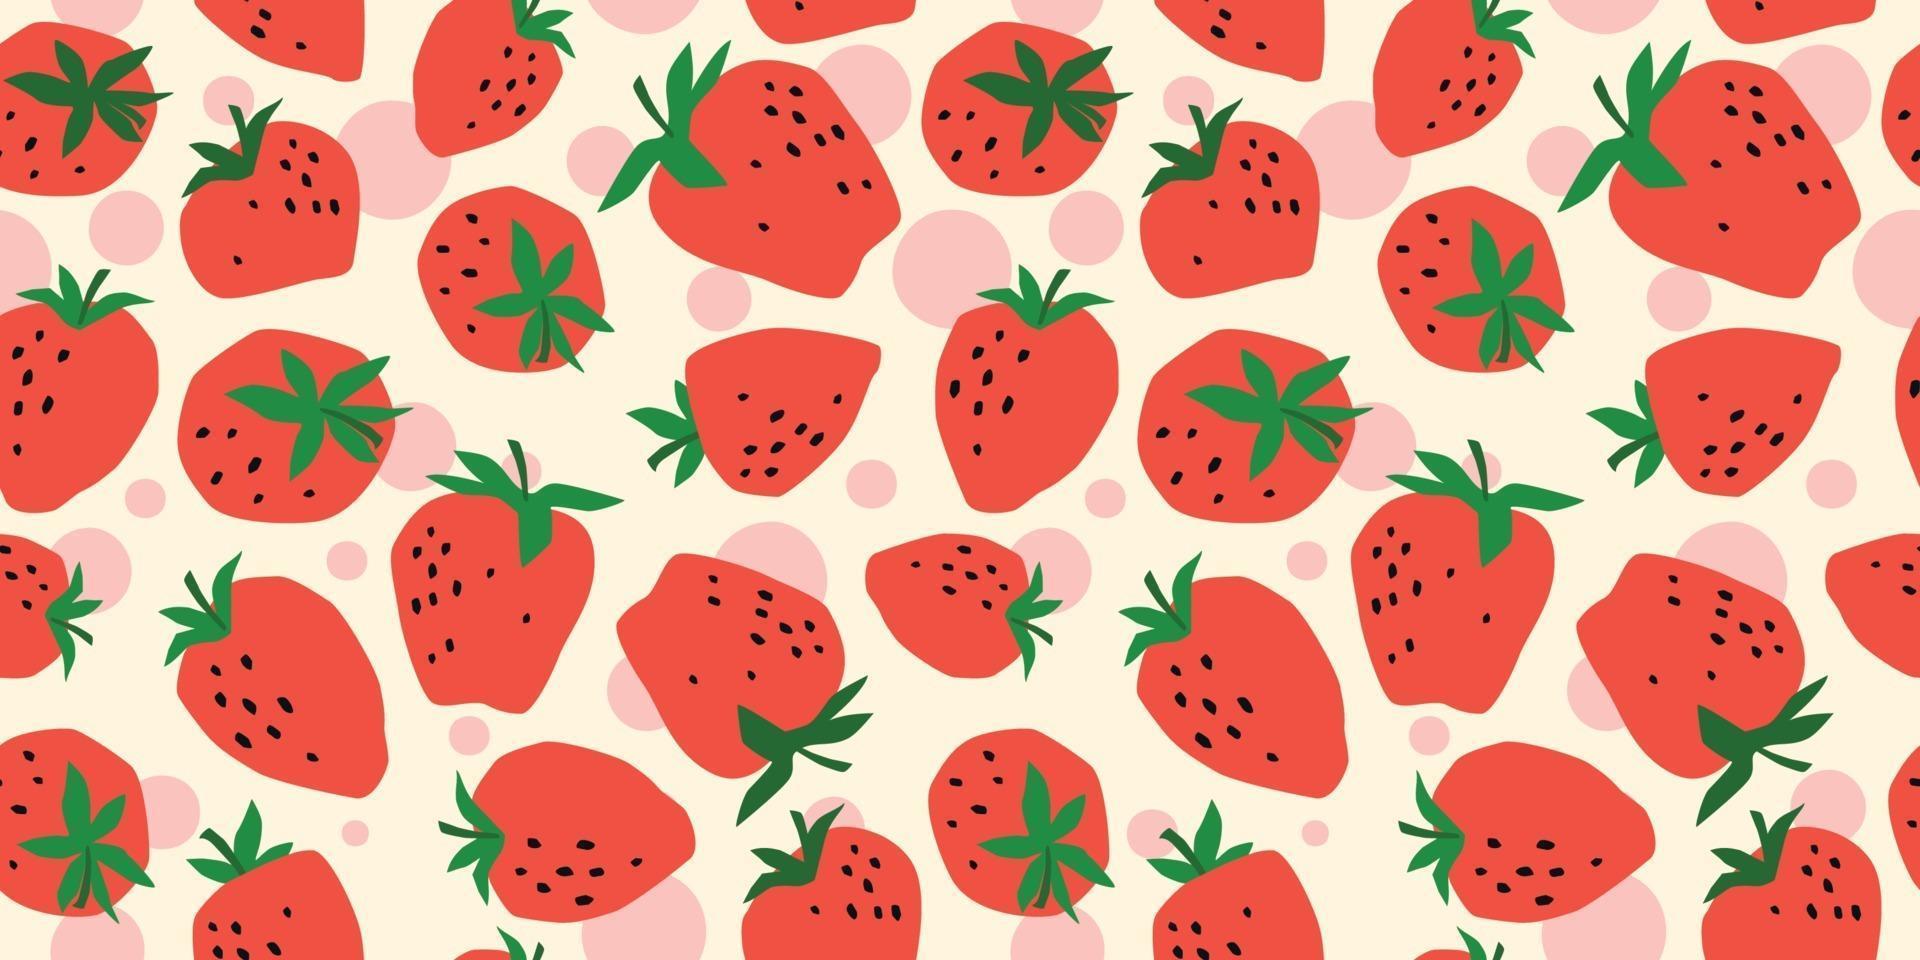 Vektor nahtloses Muster mit Erdbeere. trendige handgezeichnete Texturen. modernes abstraktes Design